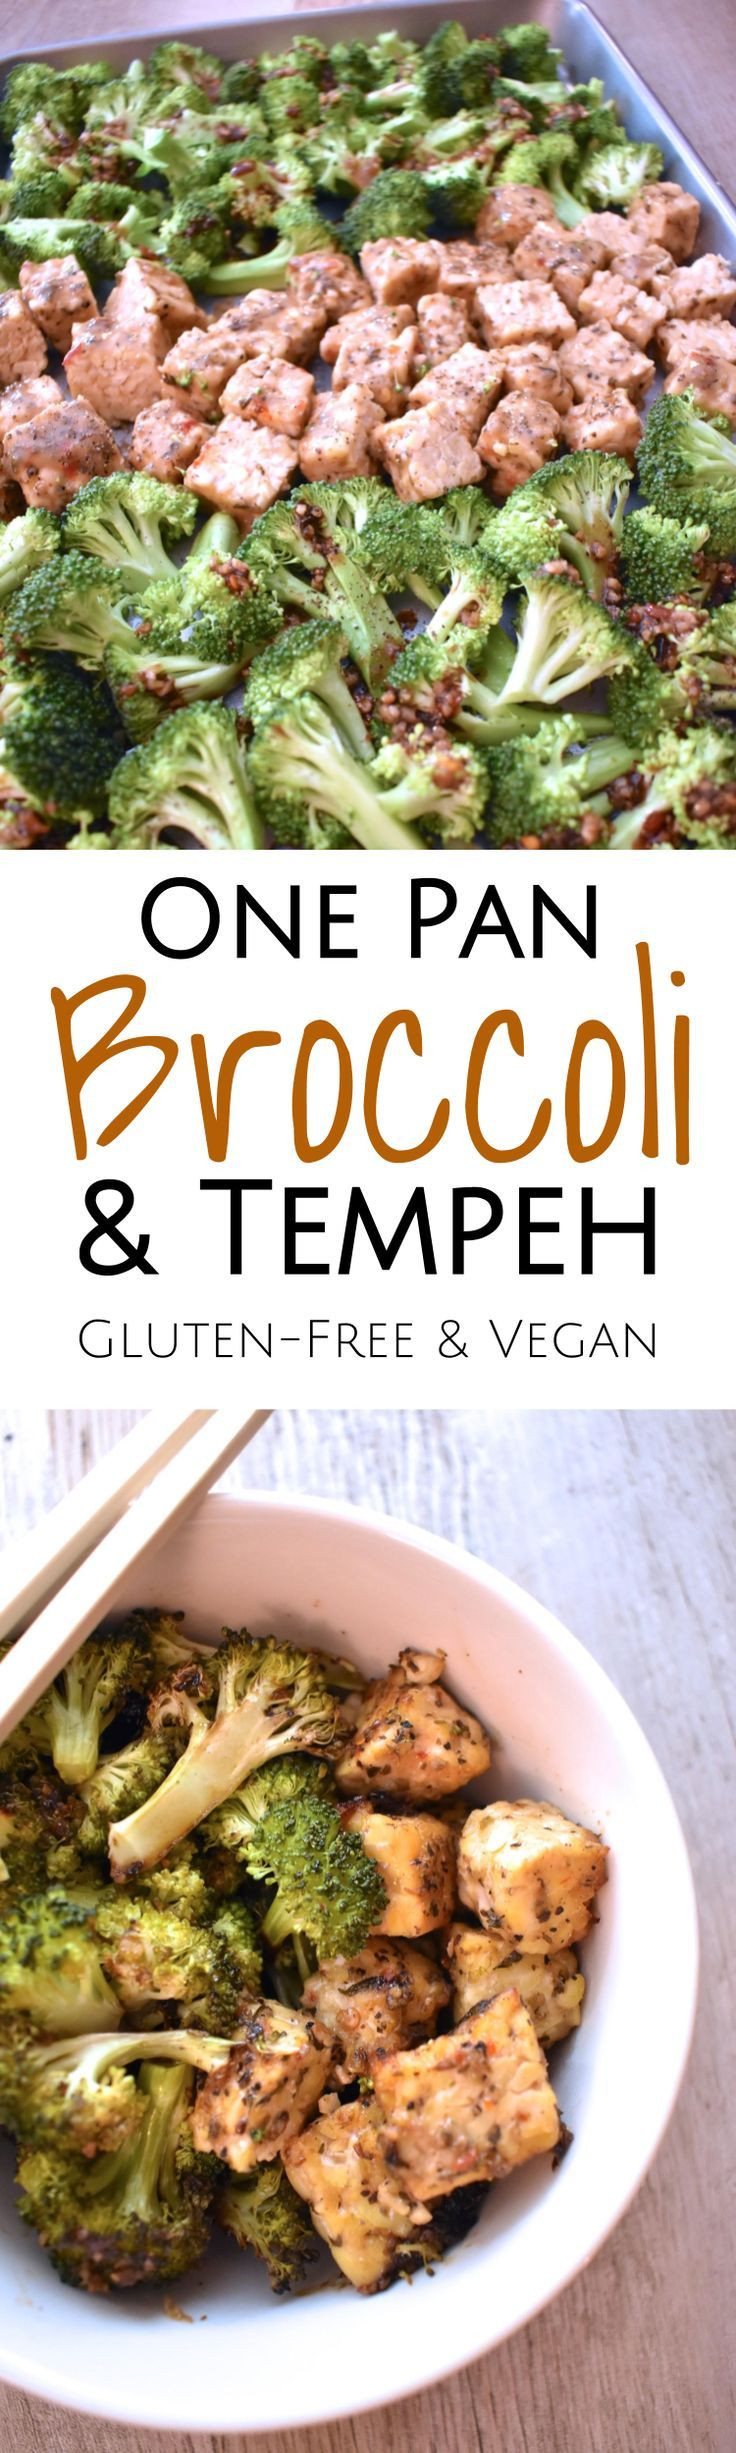 Vegan Sheet Pan Dinners
 12 best Vegan Sheet Pan Recipes images on Pinterest